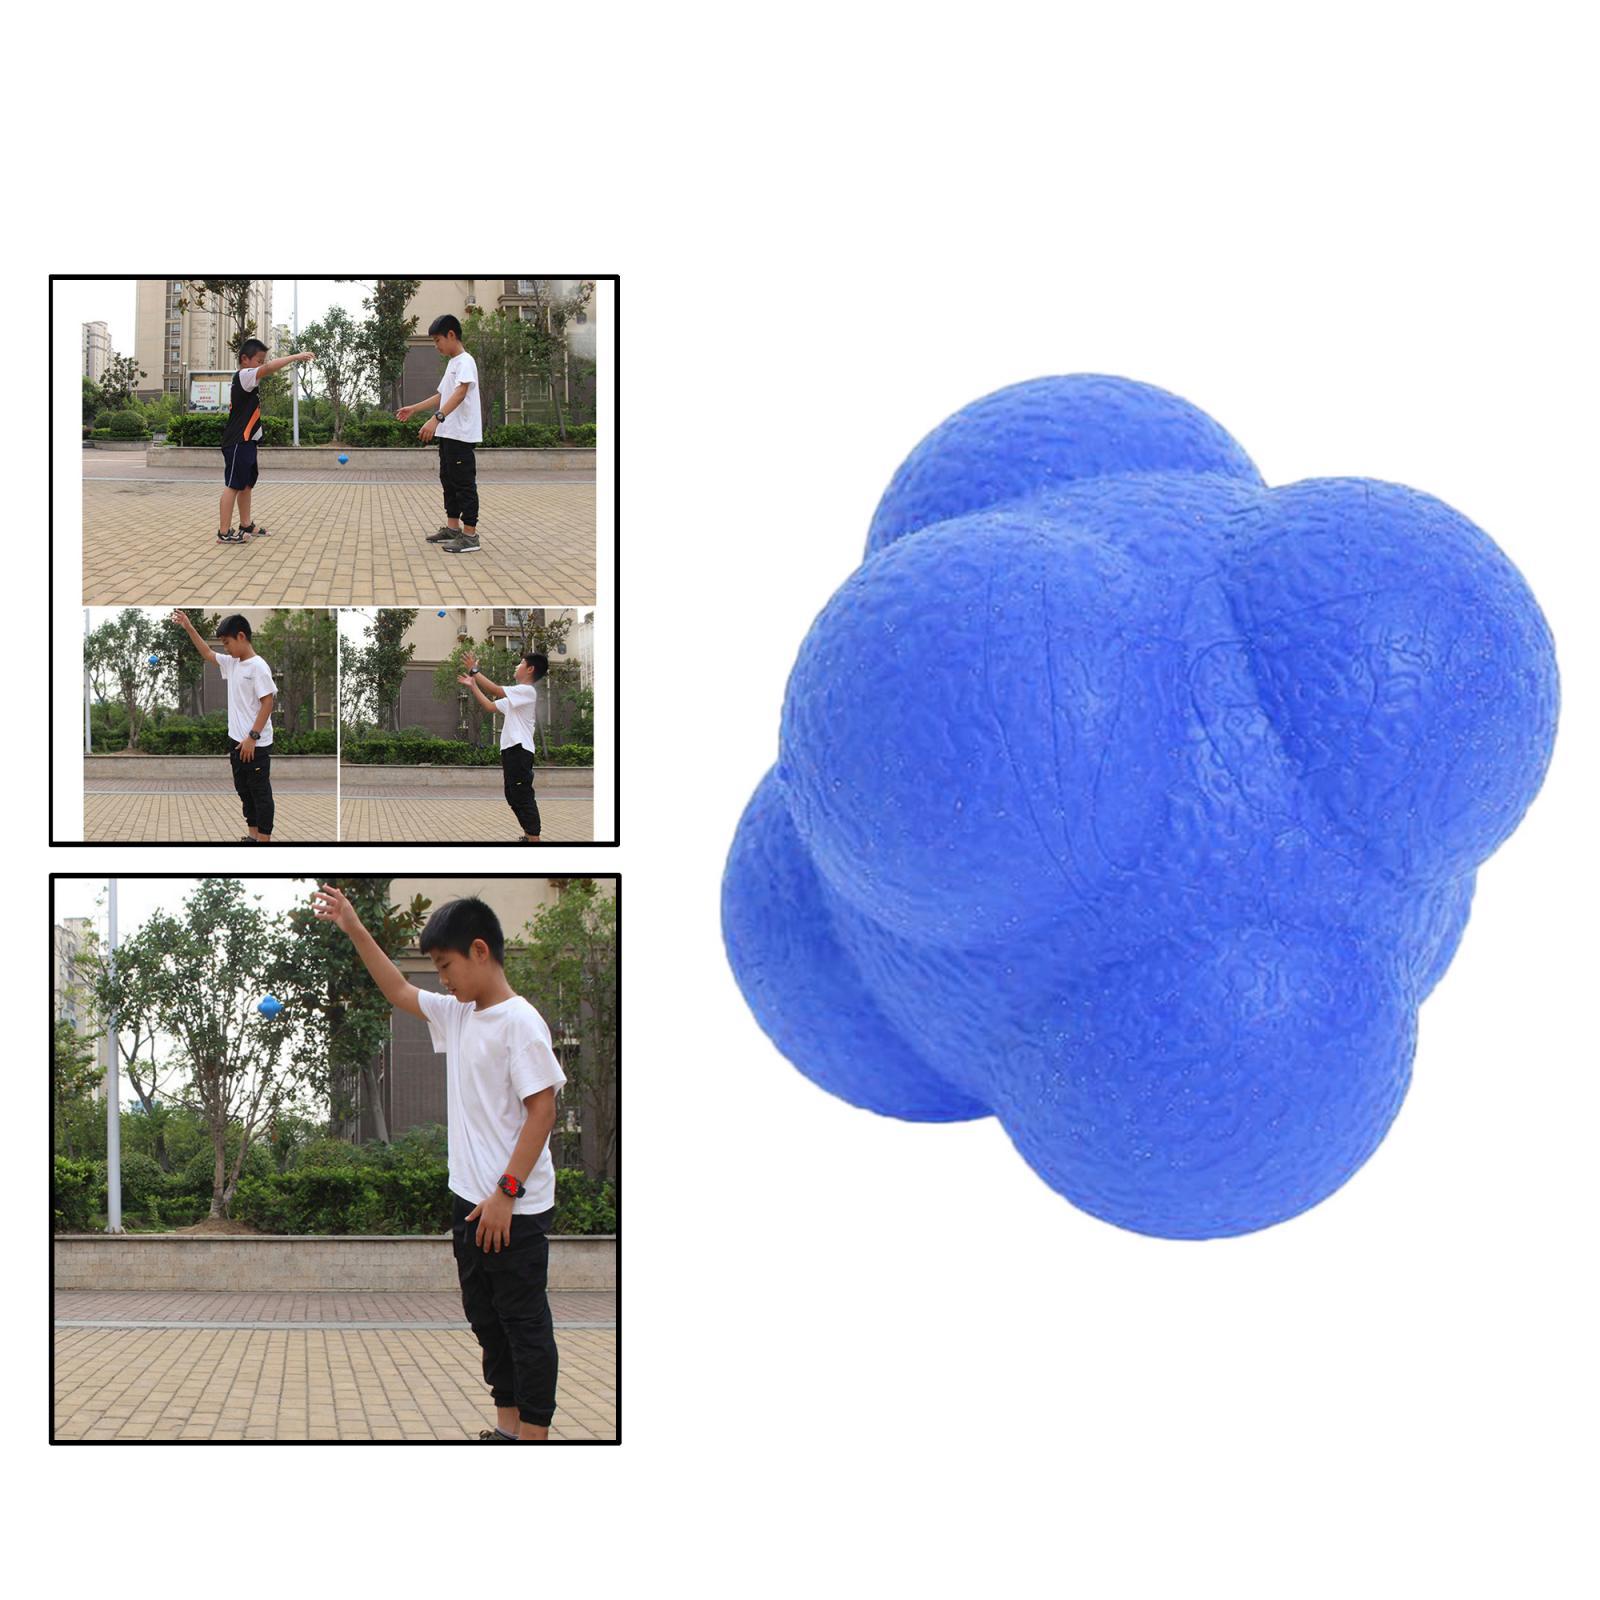 Coordination Reflex Agility Hexagonal Tennis Fitness Reaction Ball Blue